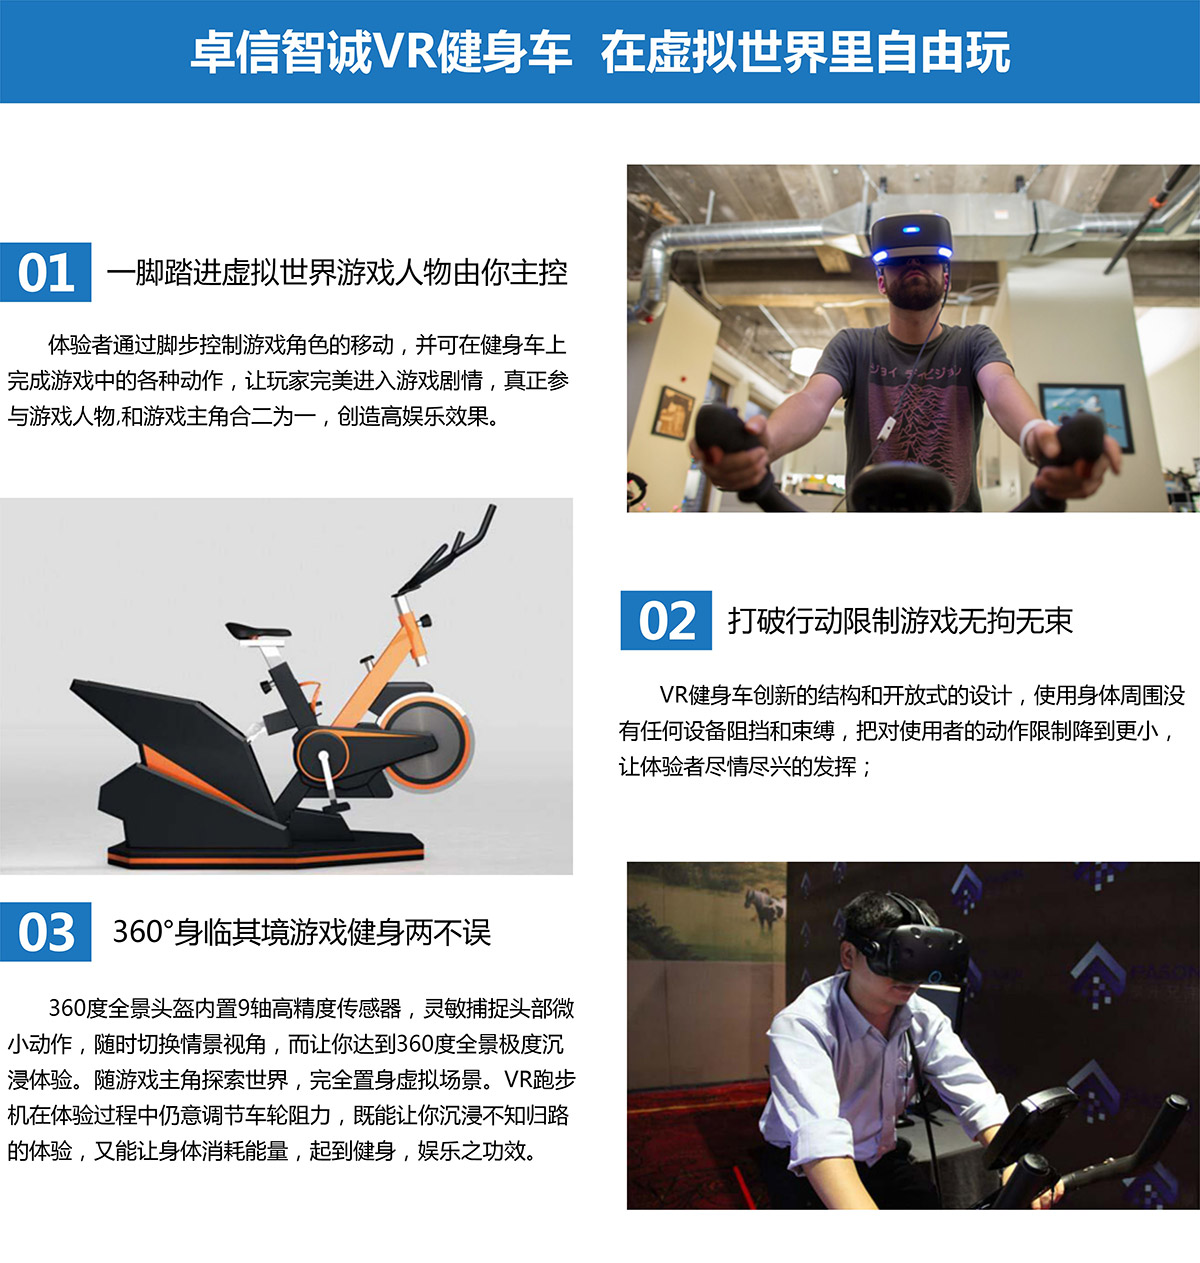 奇影幻境VR健身车在卓信智诚自由玩.jpg